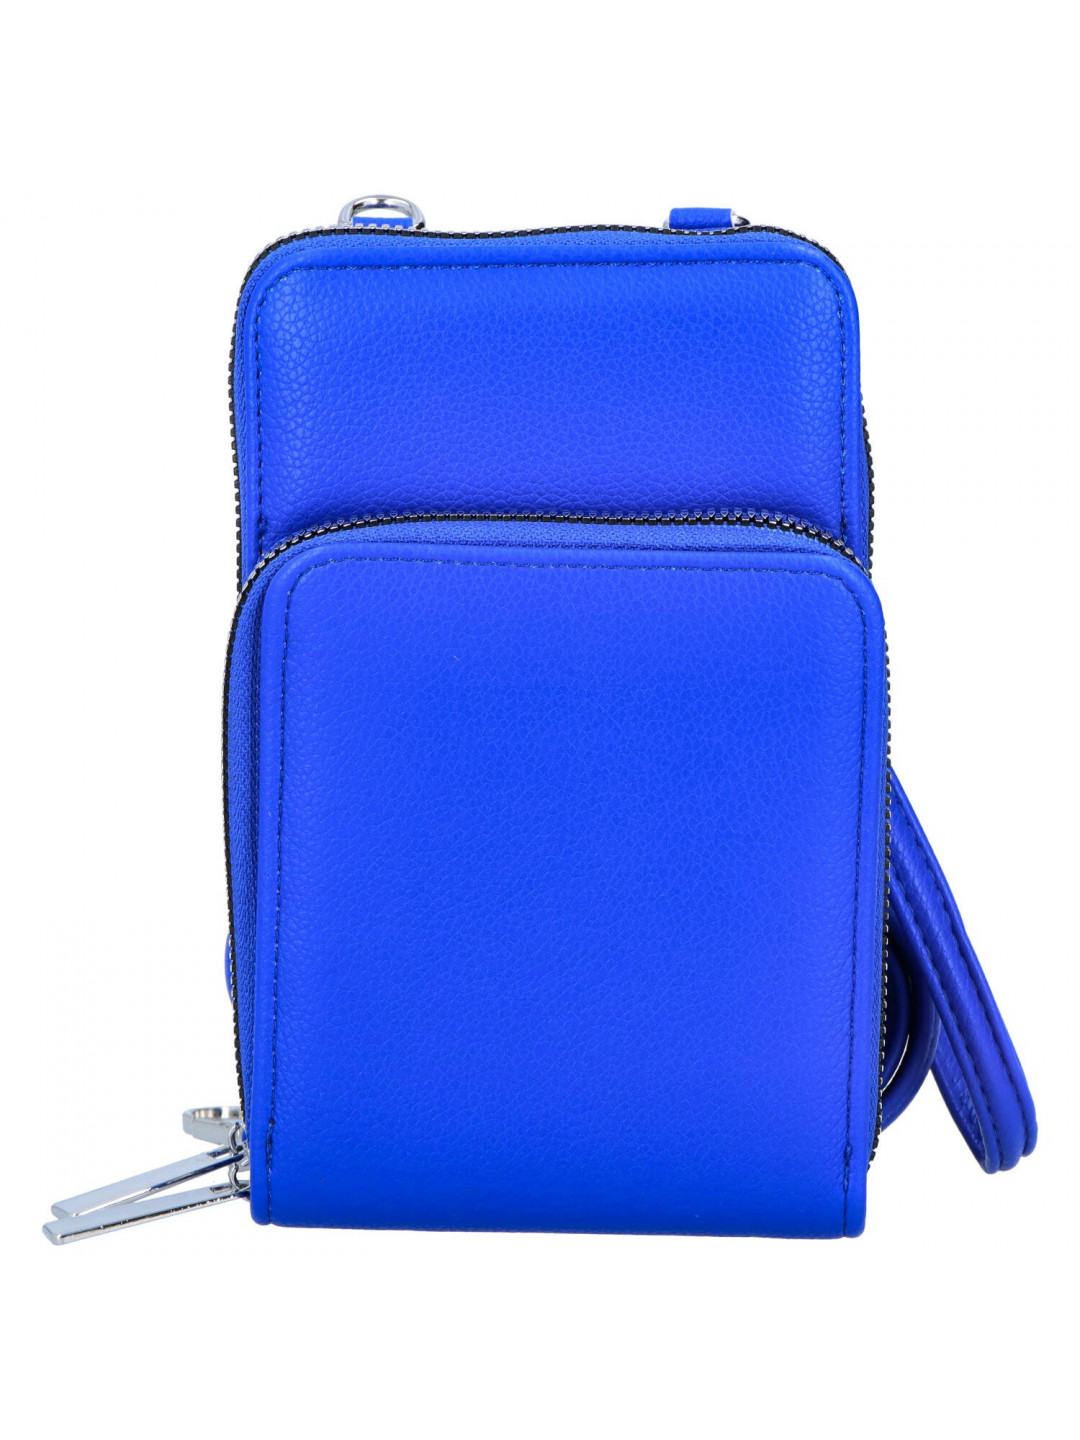 Praktická koženková kapsa na doklady s dlouhým popruhem Toby výrazná modrá